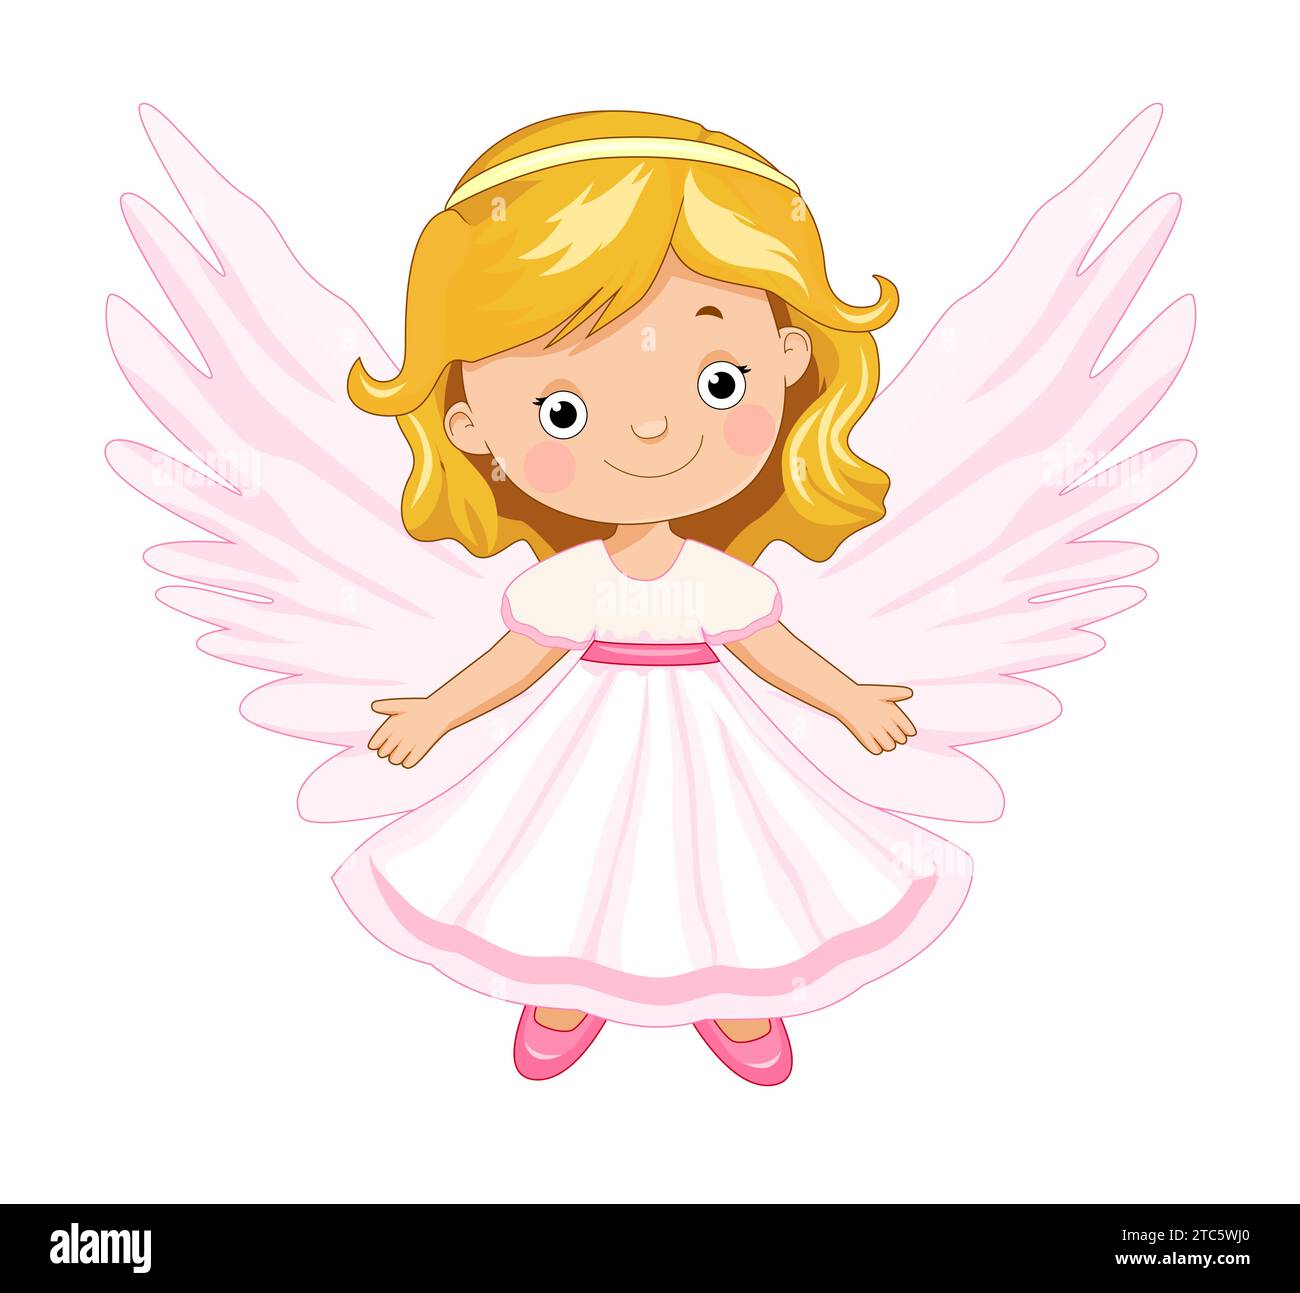 Baby Angel steht in einem rosa Kleid auf weißem Hintergrund. Niedliche Kinderpuppe, Spielzeug Angelic. Stock Vektor